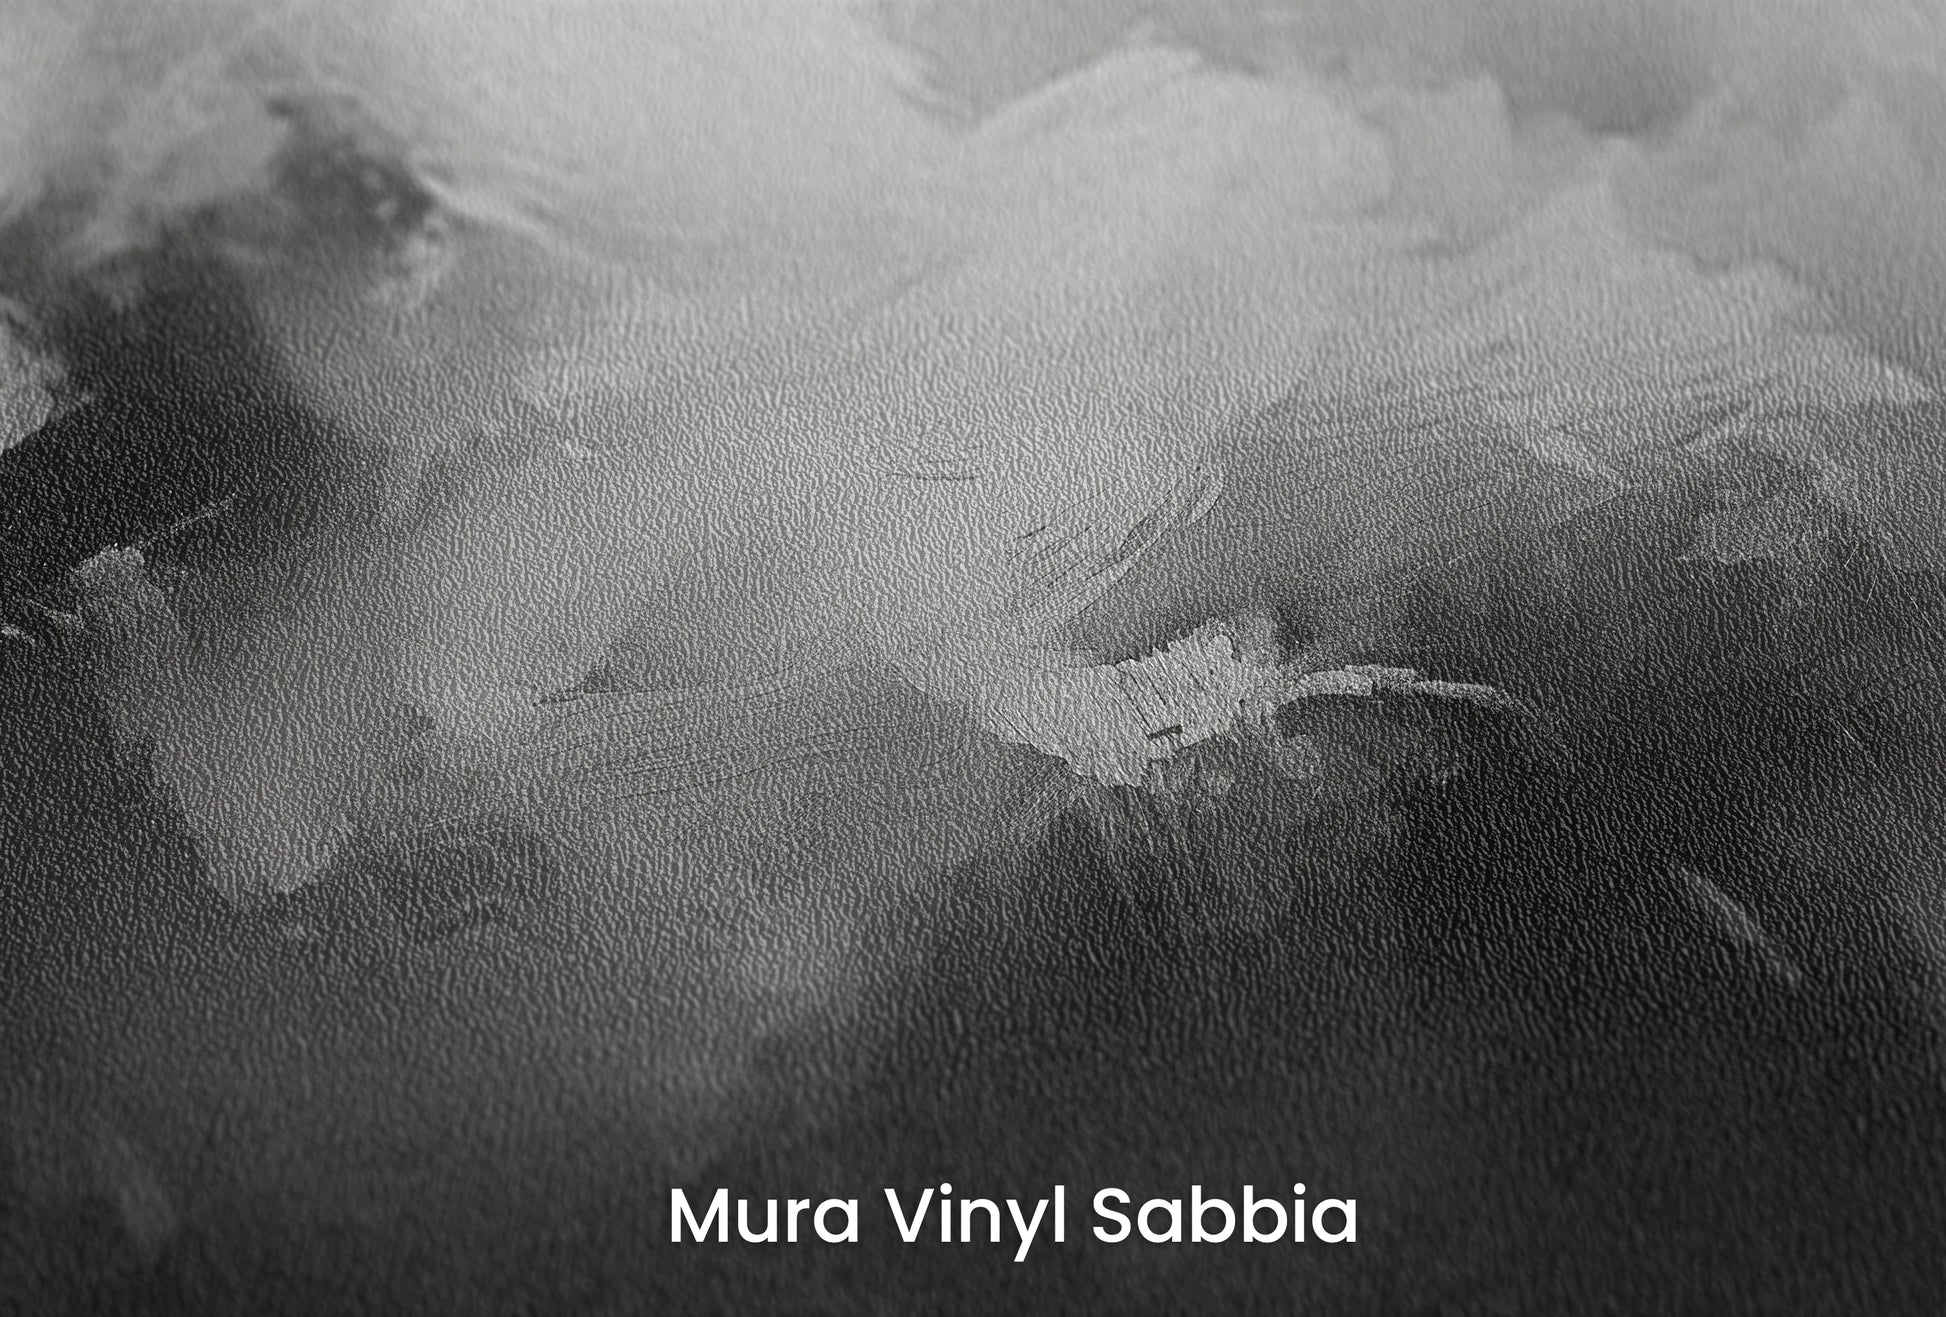 Zbliżenie na artystyczną fototapetę o nazwie Monochromatic Mood na podłożu Mura Vinyl Sabbia struktura grubego ziarna piasku.